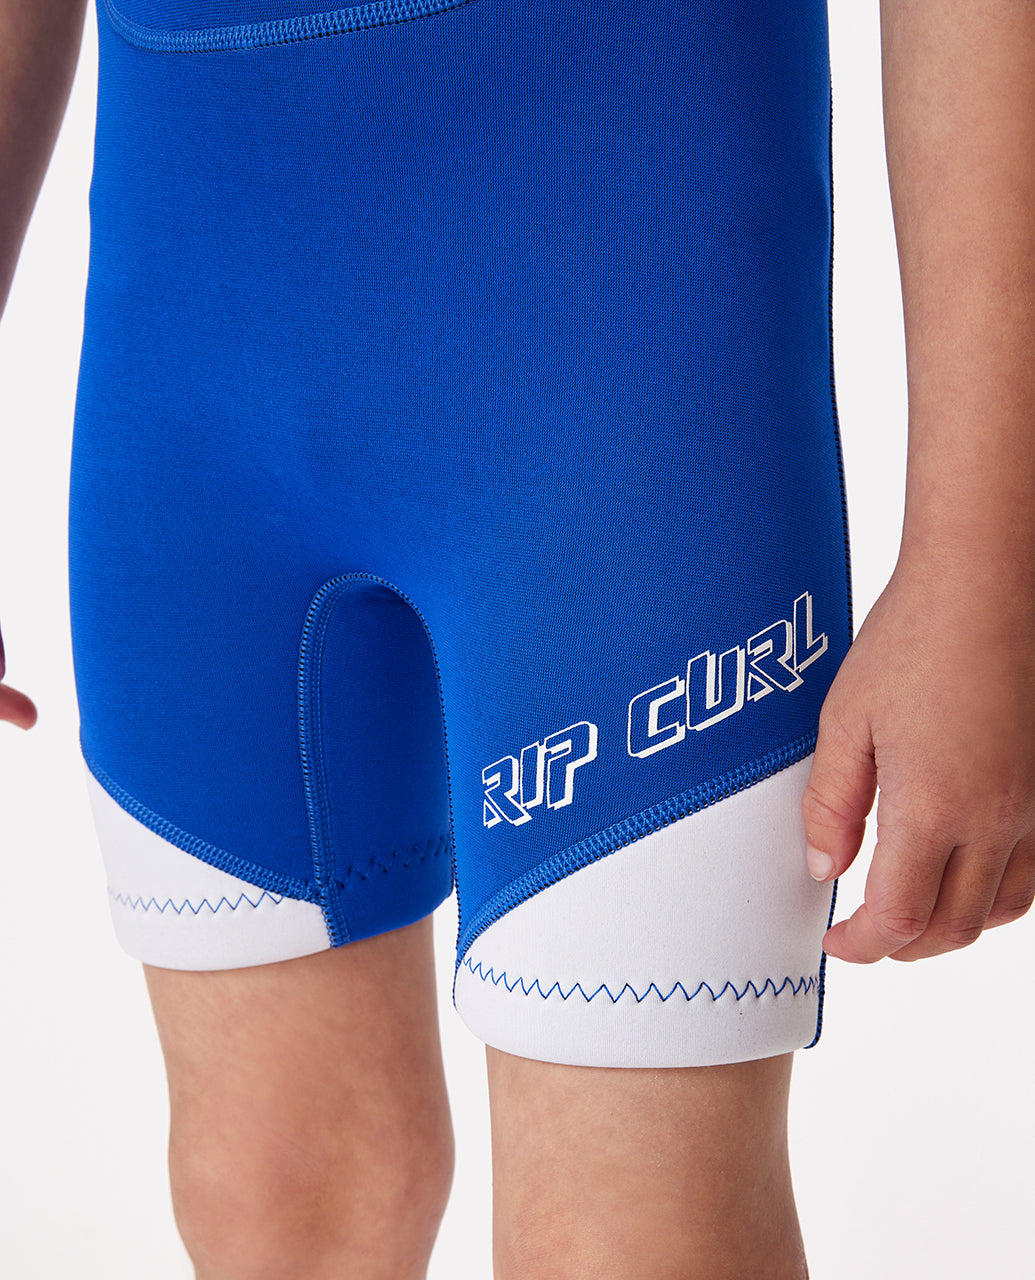 Groms Omega Back Zip Springsuit Kids Wetsuit - Blue